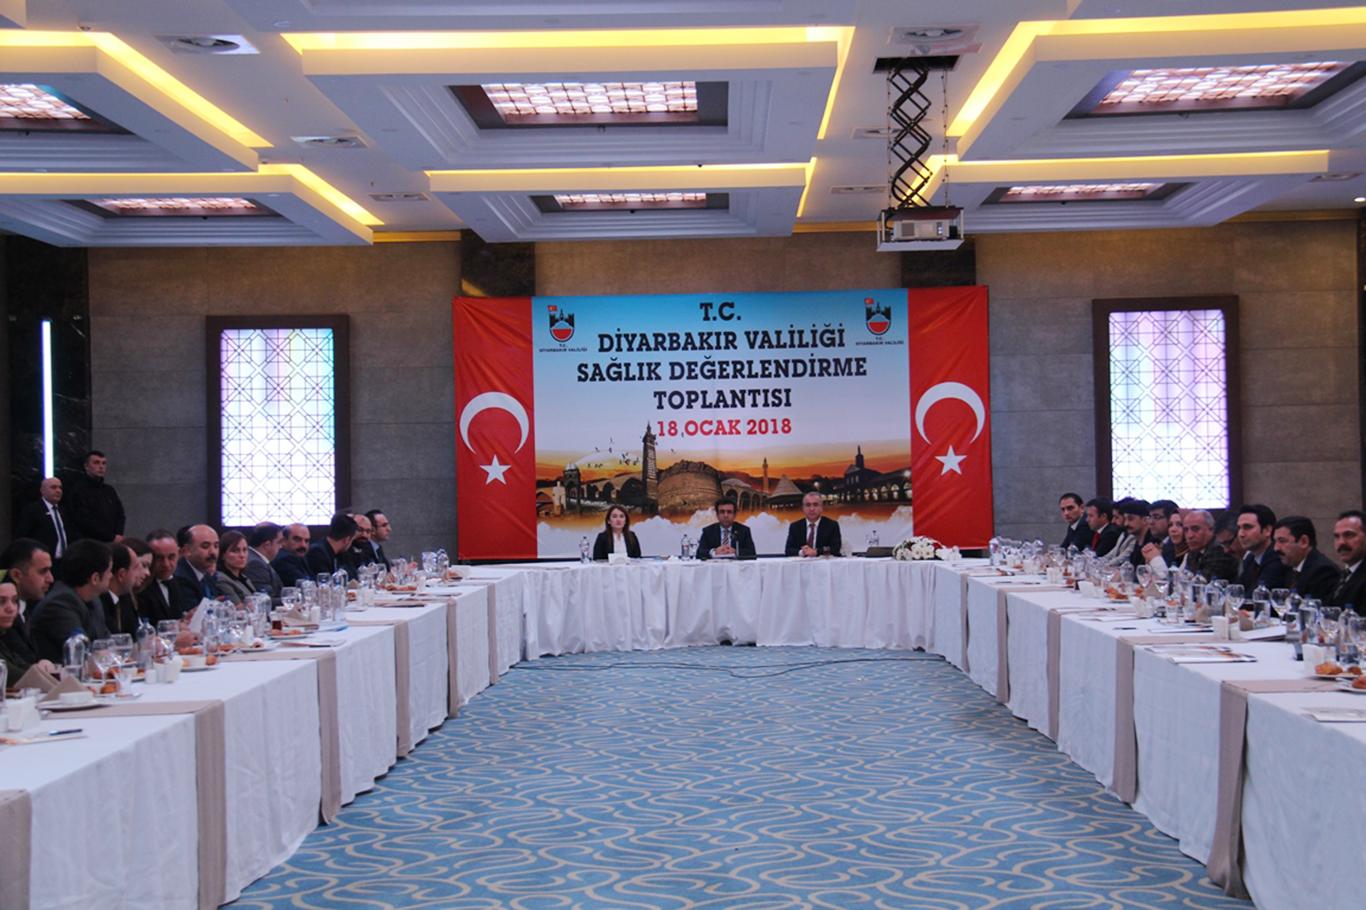 Diyarbakır’da "Sağlık Değerlendirme Toplantısı" yapıldı